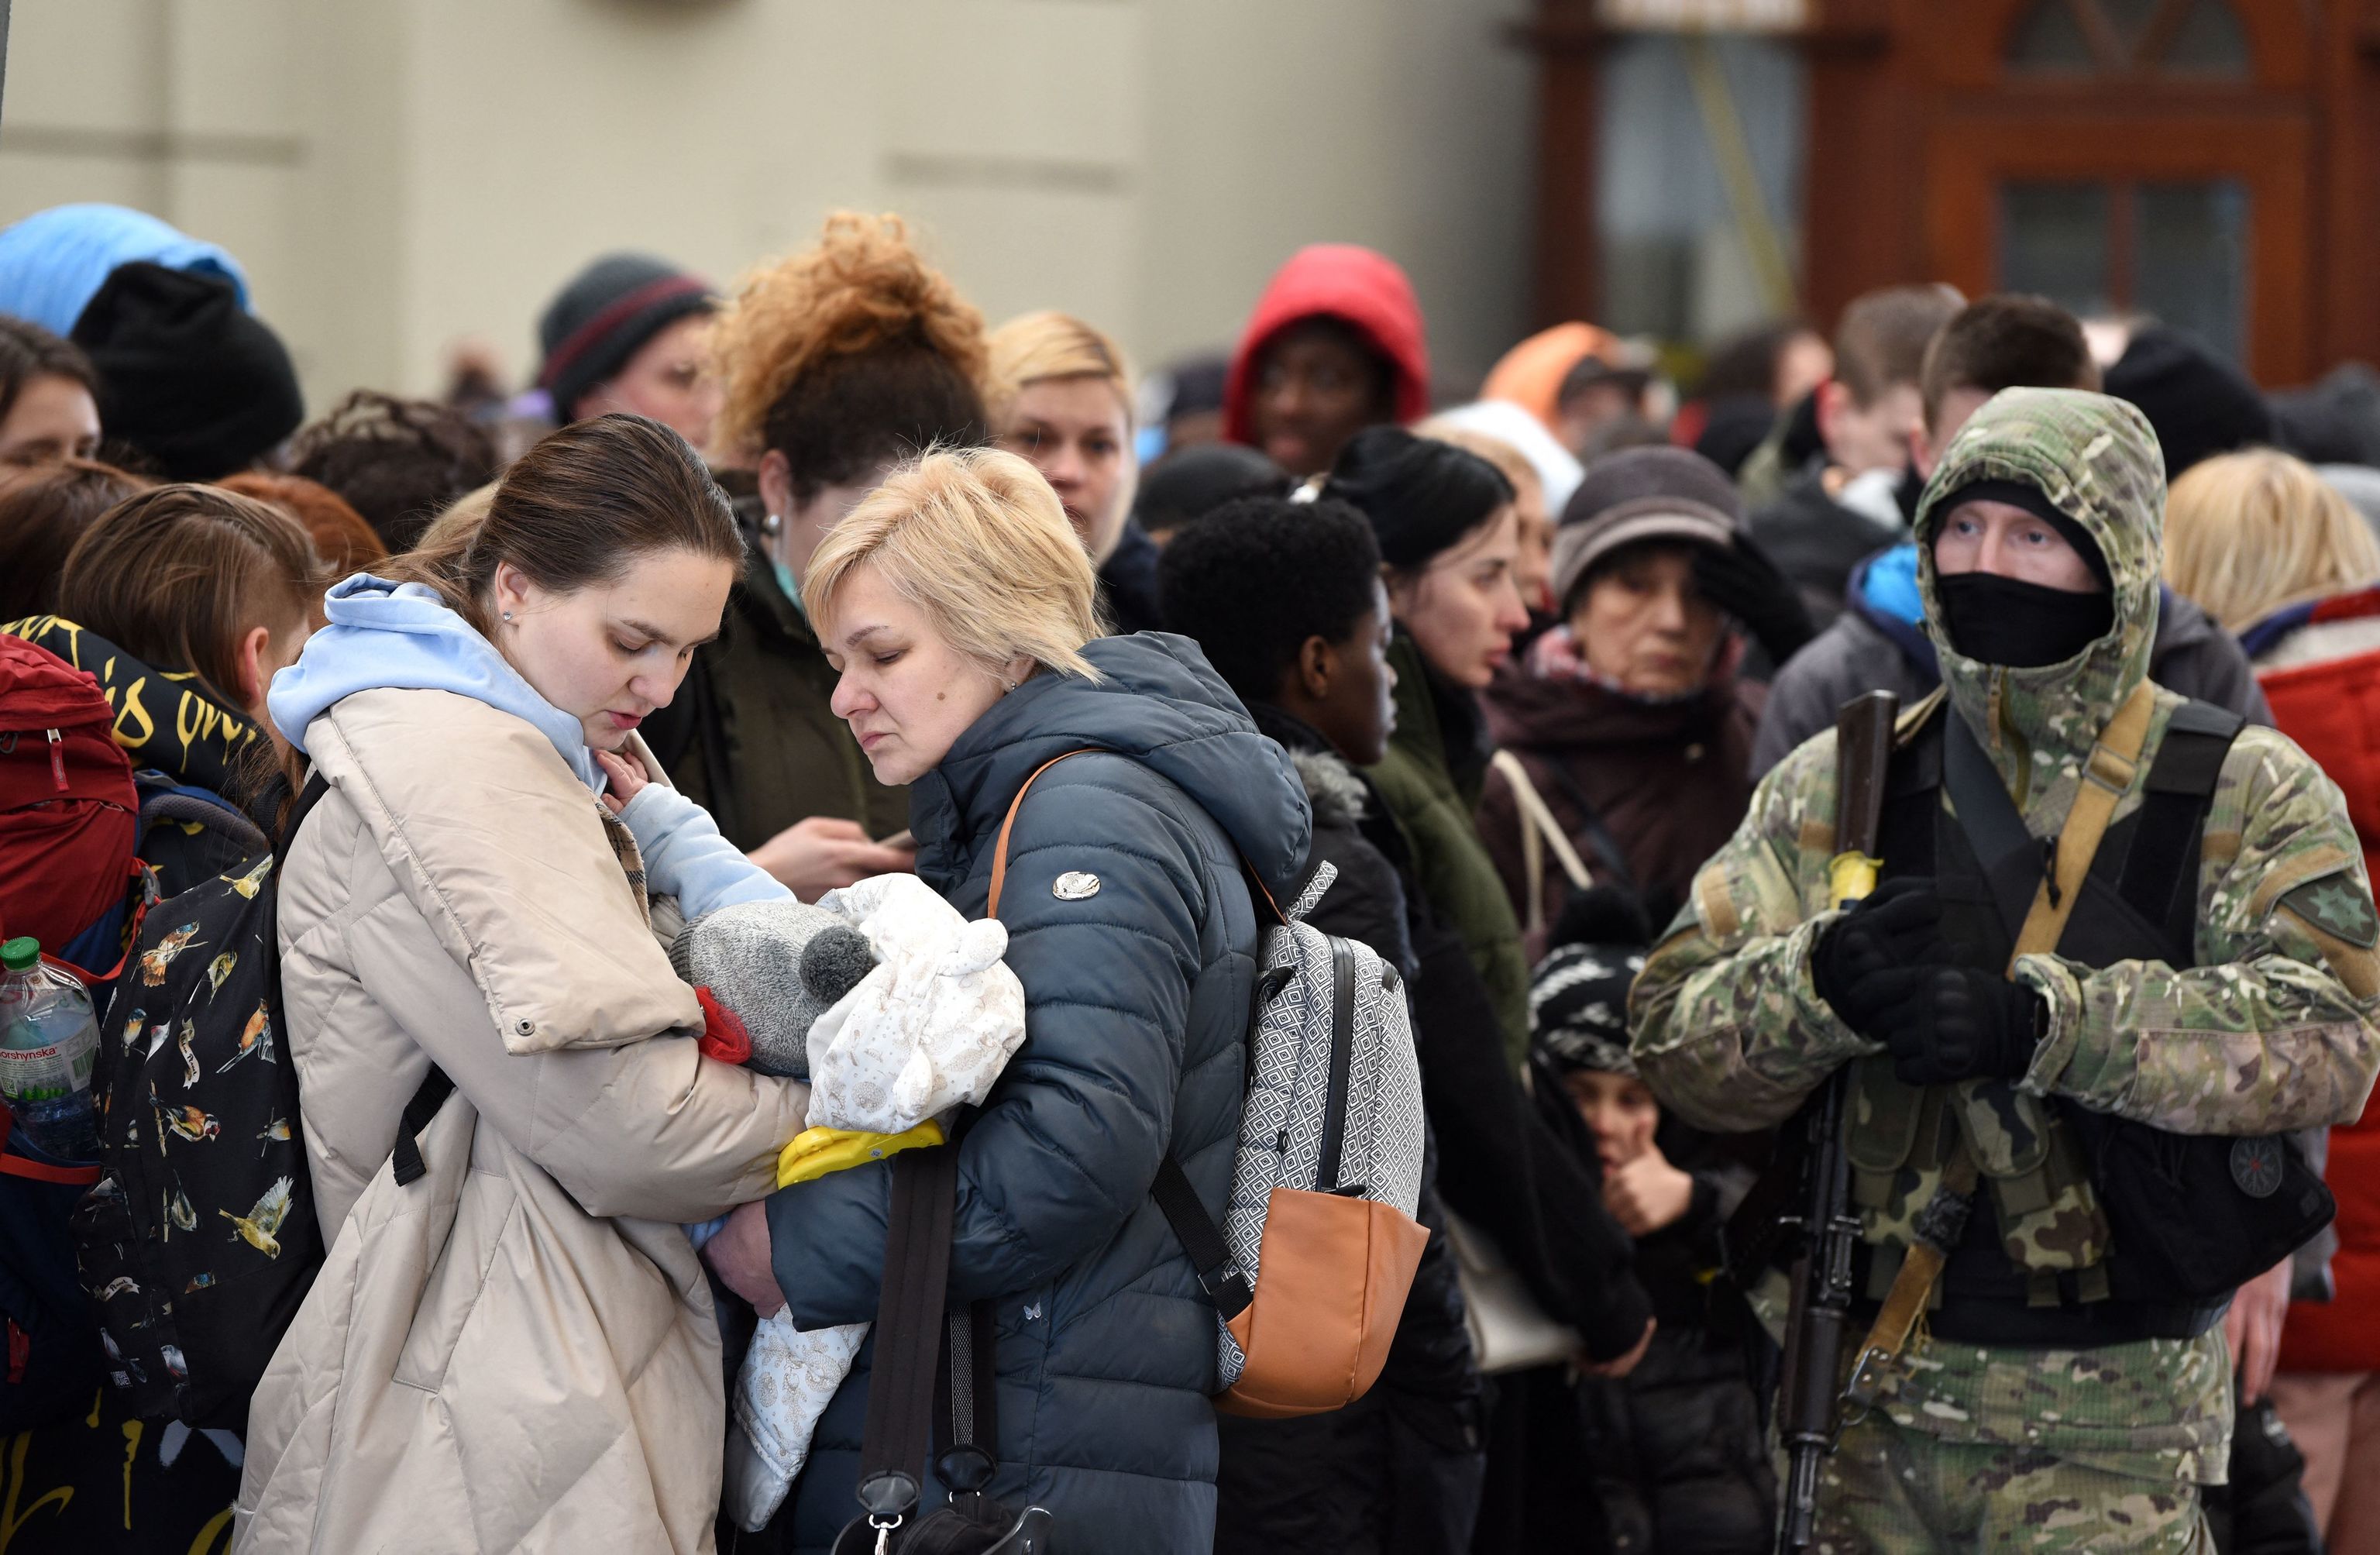 La gente espera un tren a Polonia en la estacin de tren de la ciudad occidental ucraniana de Lviv el 26 de febrero de 2022. - Las fuerzas ucranianas repelieron un ataque ruso contra Kiev, pero "grupos de sabotaje" se infiltraron en la capital, dijeron las autoridades el 26 de febrero, mientras Ucrania informaba de 198 civiles muertos en la invasin rusa hasta el momento. El presidente ucraniano, Volodymyr Zelensky, se mostr desafiante y prometi que su pas prooccidental nunca cedera ante el Kremlin, incluso cuando Rusia dijo que haba disparado misiles de crucero contra objetivos militares.

Traduccin realizada con la versin gratuita del traductor www.DeepL.com/Translator